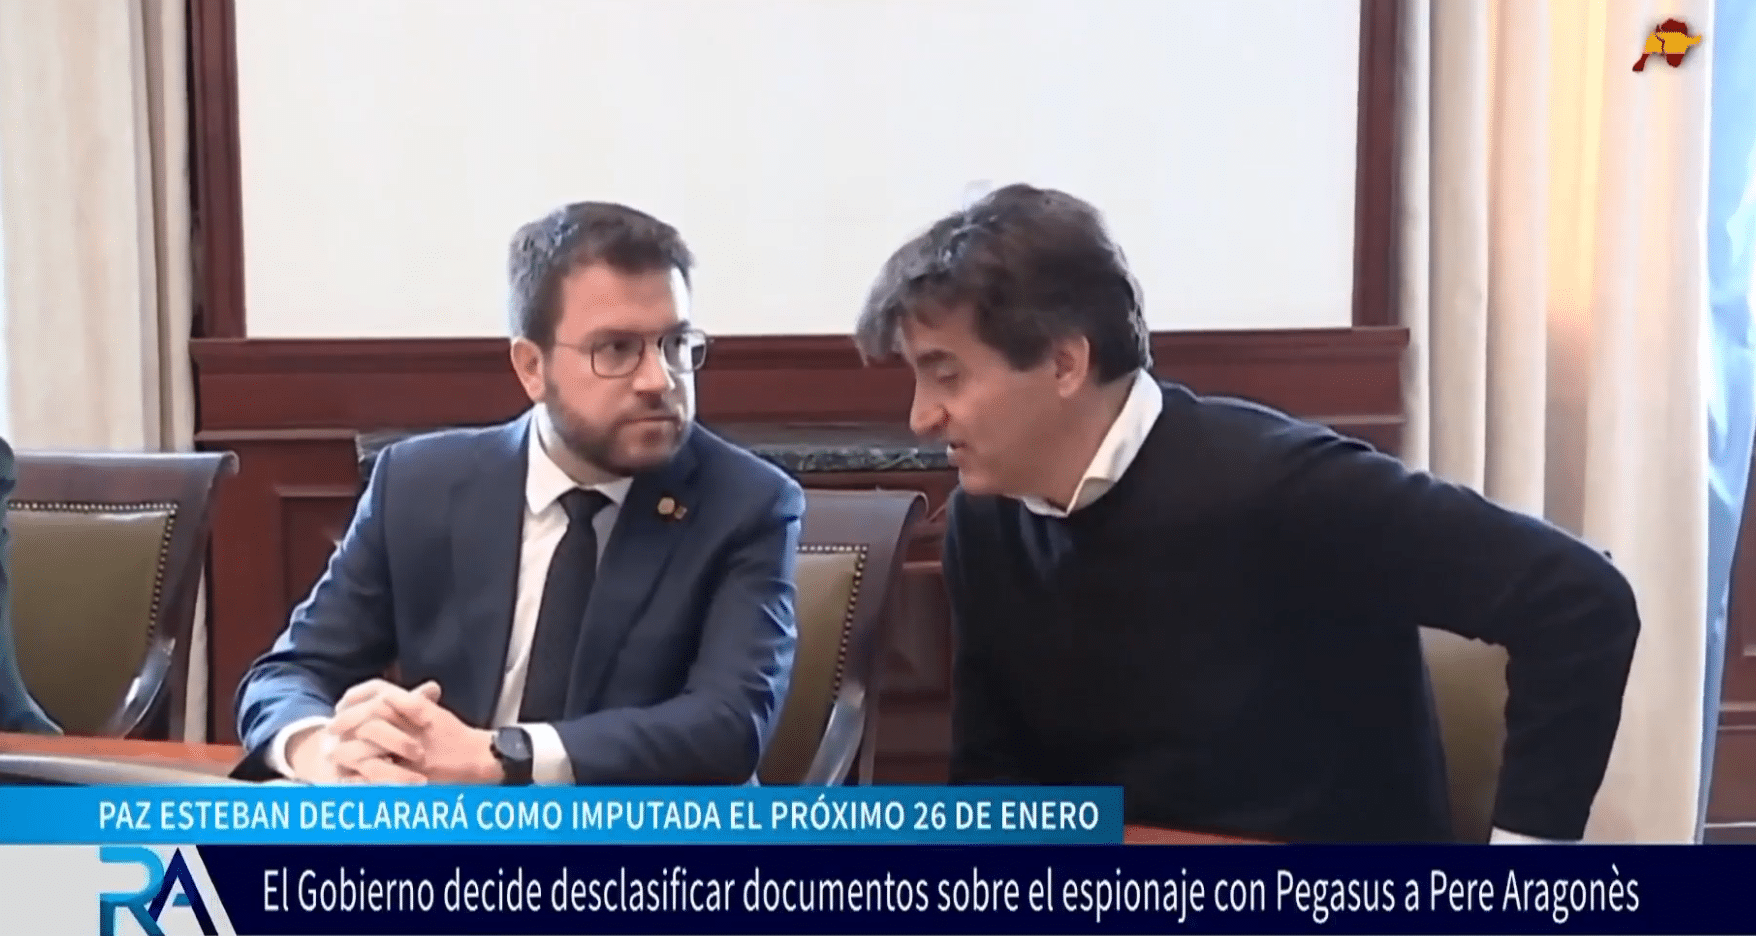 El Gobierno desclasifica parcialmente los documentos del espionaje a Pere Aragonès y pide la comparecencia de Rajoy y otros líderes del PP